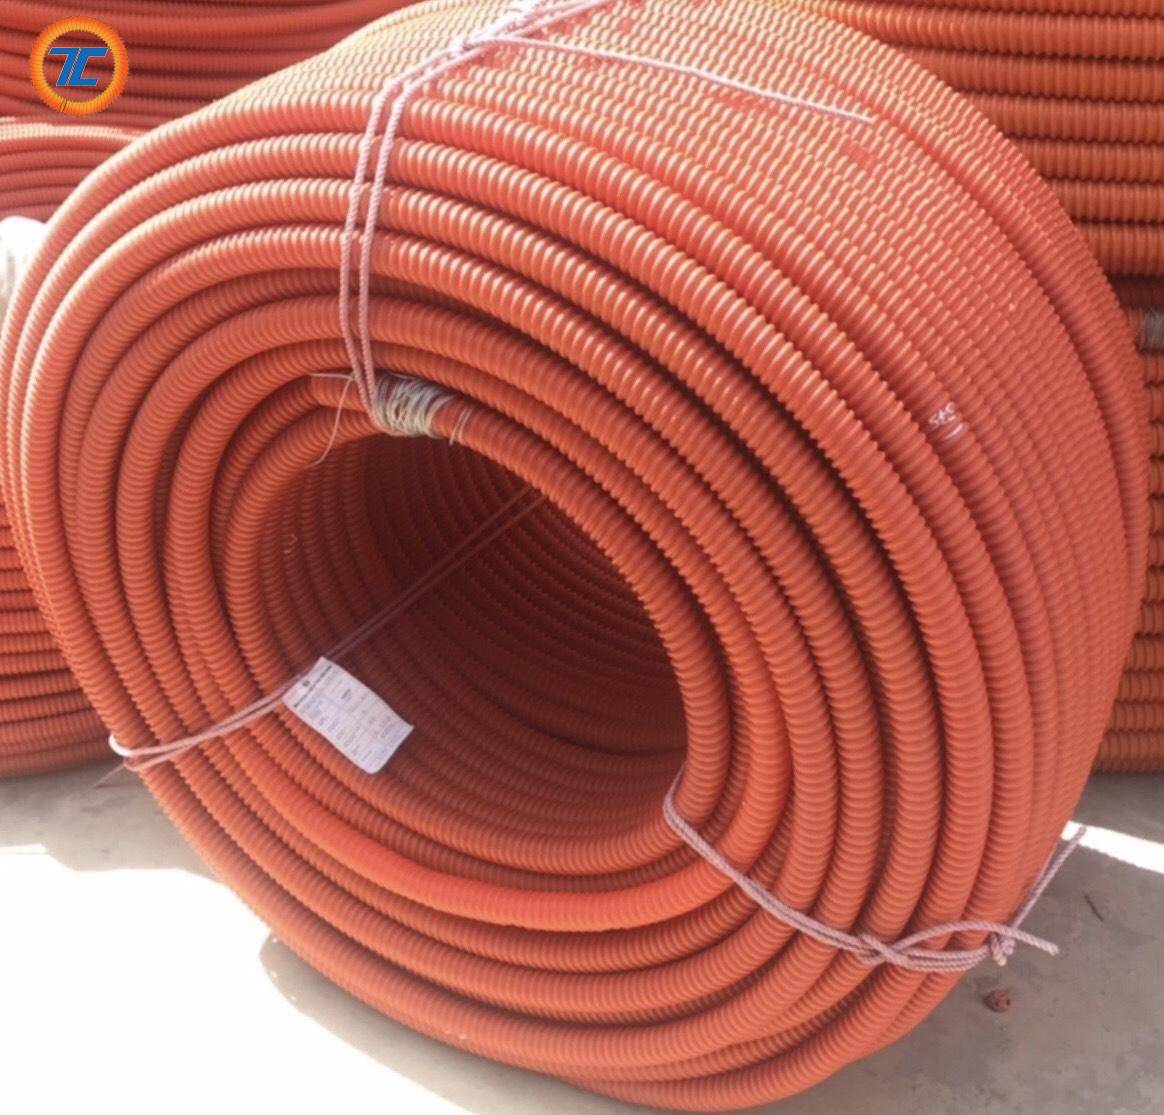 Thành Công - Đơn vị cung cấp ống nhựa xoắn HDPE tại Quận Bình Thạnh đạt tiêu chuẩn quốc gia